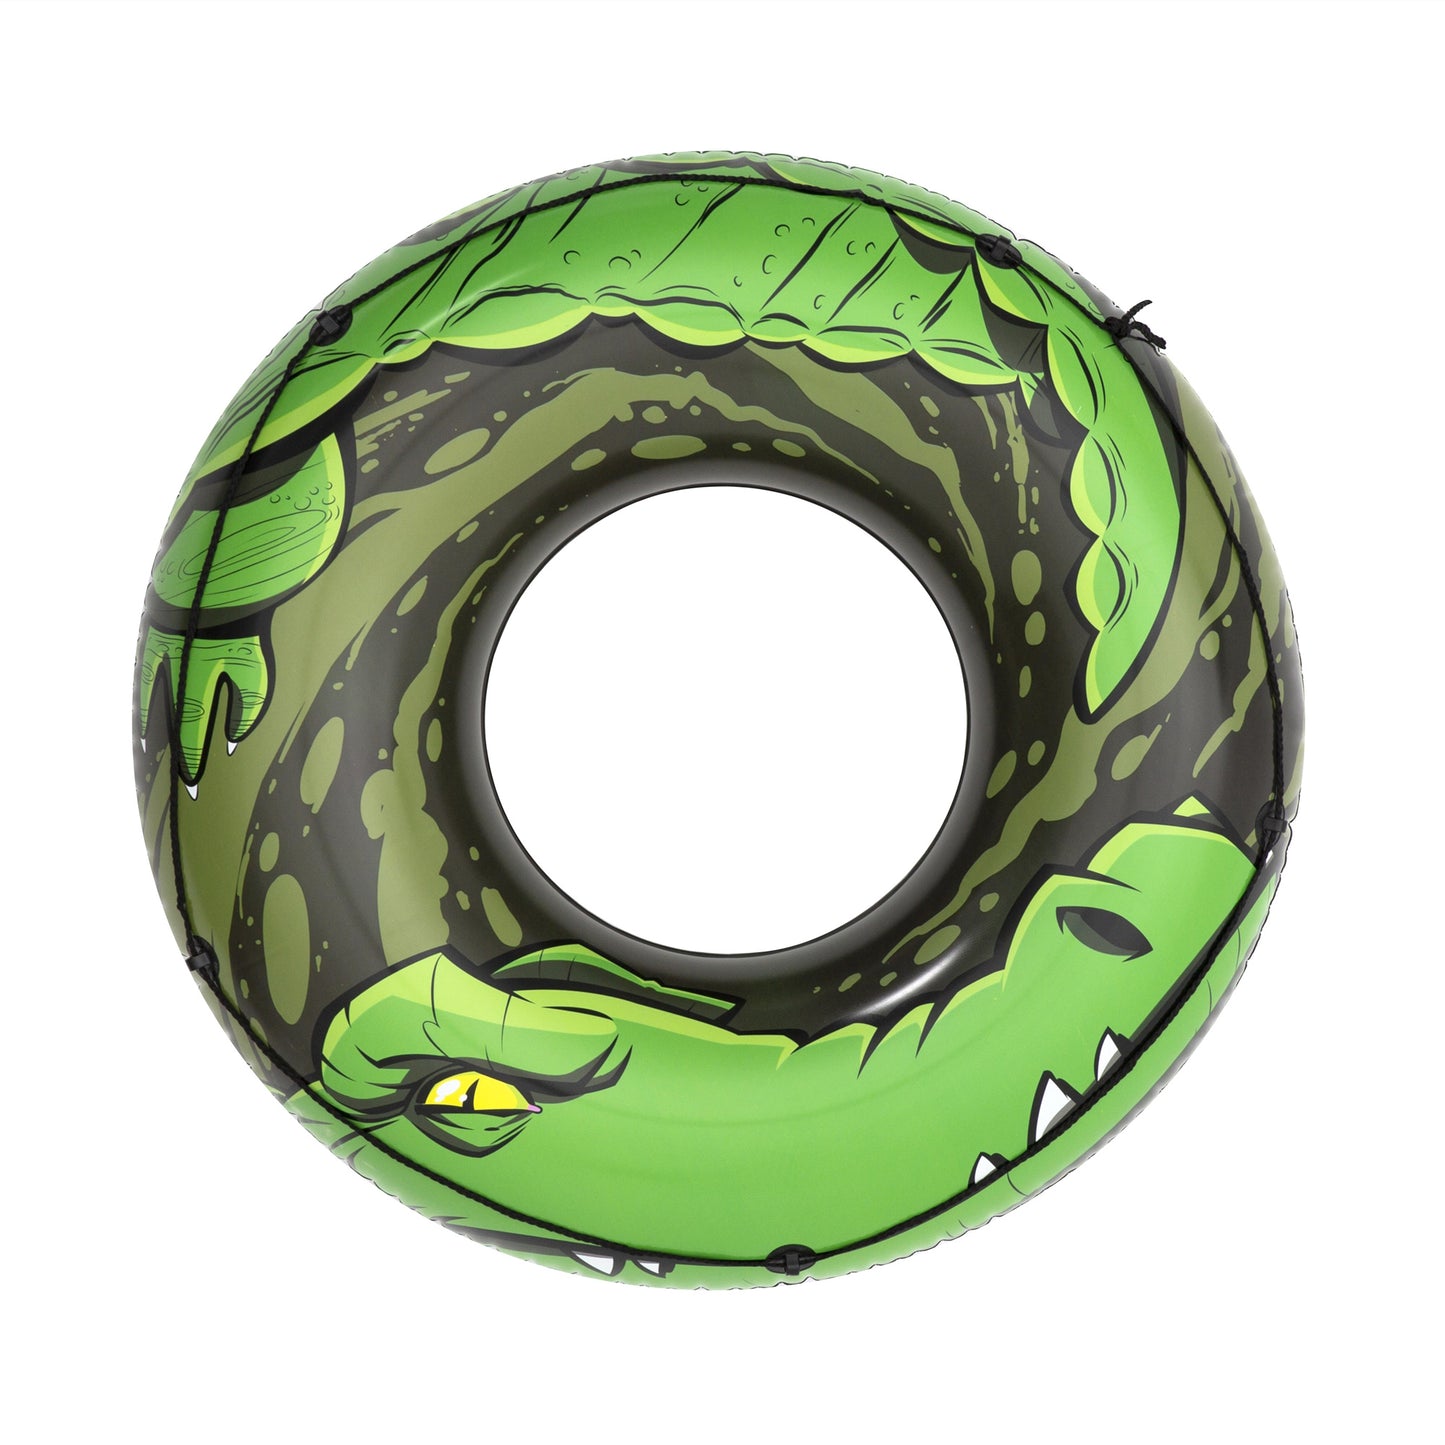 H2OGO! River Gator Inflatable Tube - 6 Pack